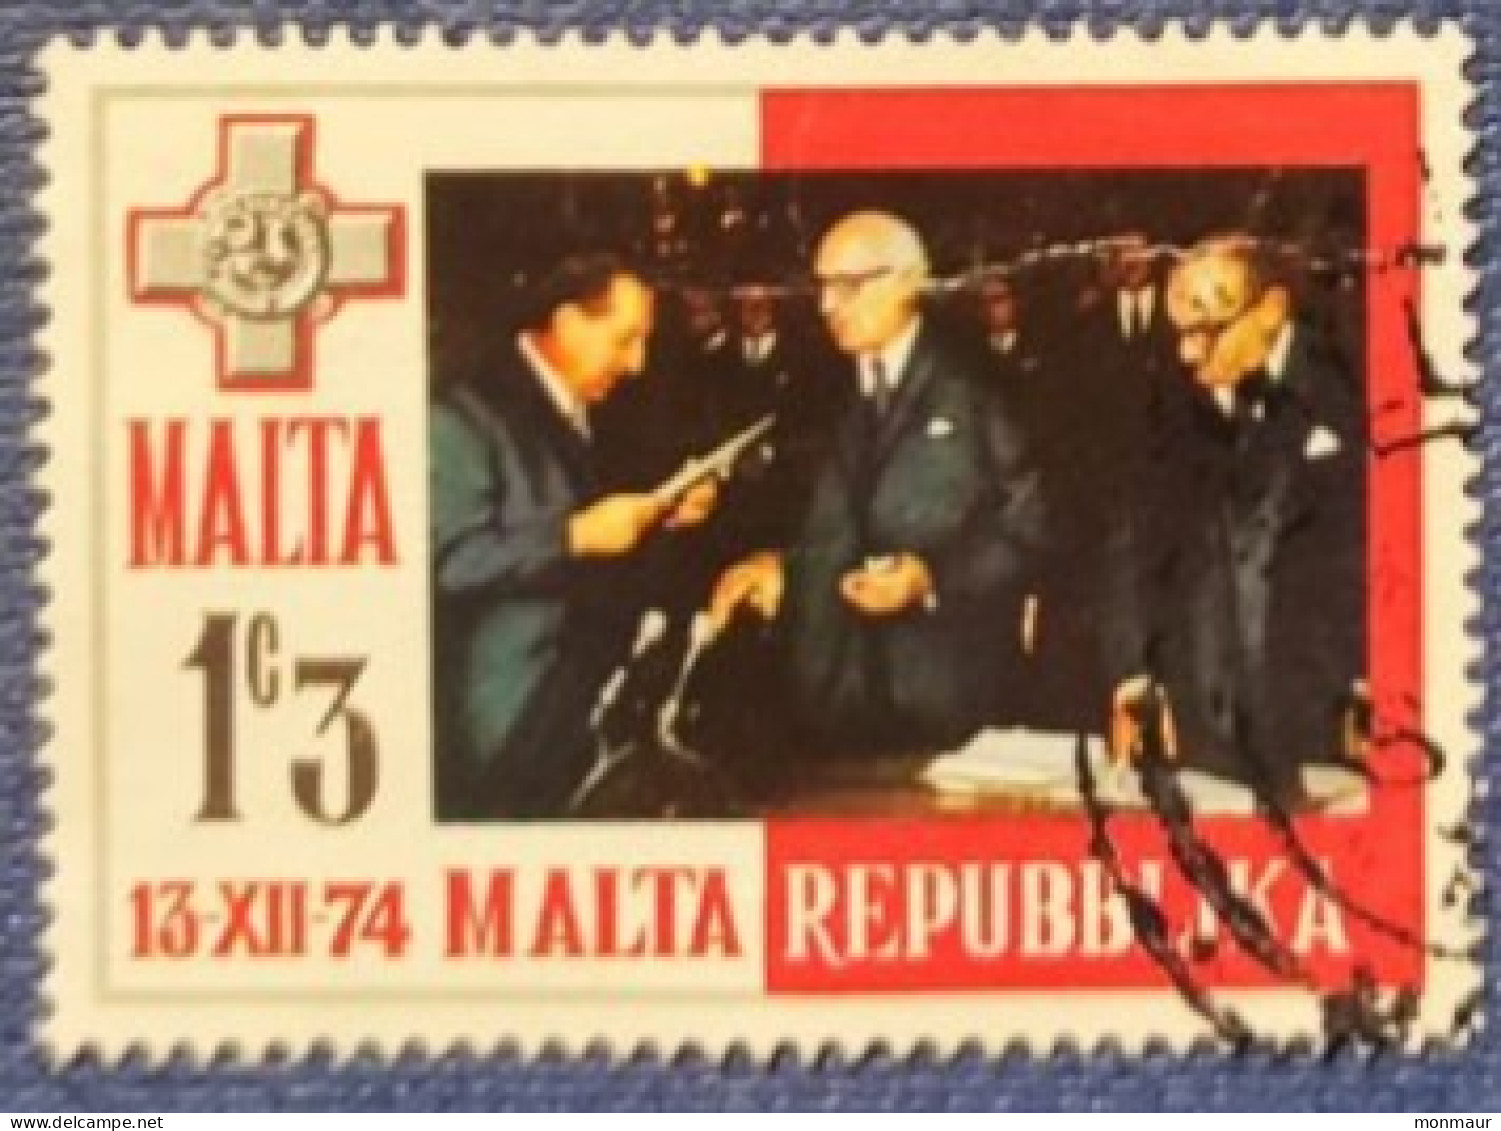 MALTA 1974 REPUBBLICA - Malte